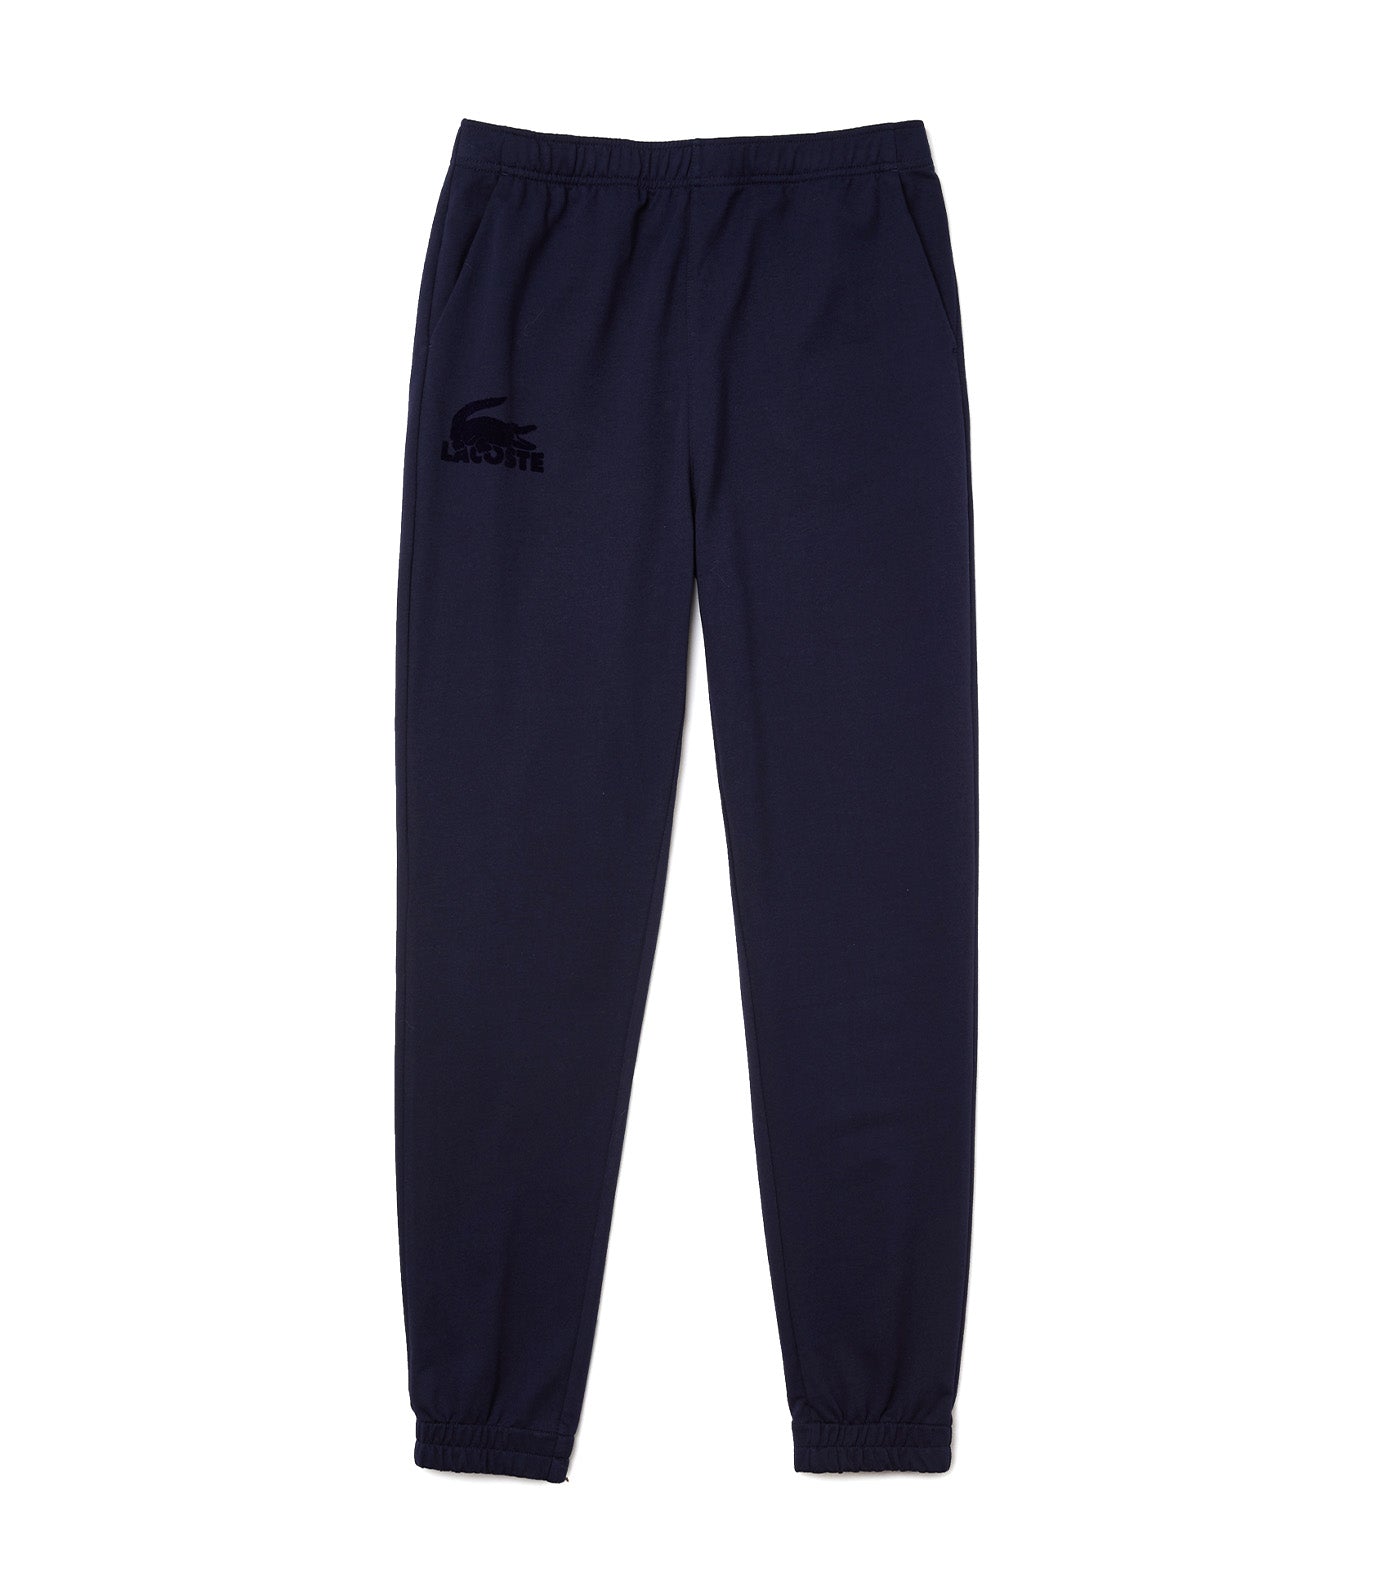 Men's Cotton Fleece Blend Indoor Jogging Pants Navy Blue